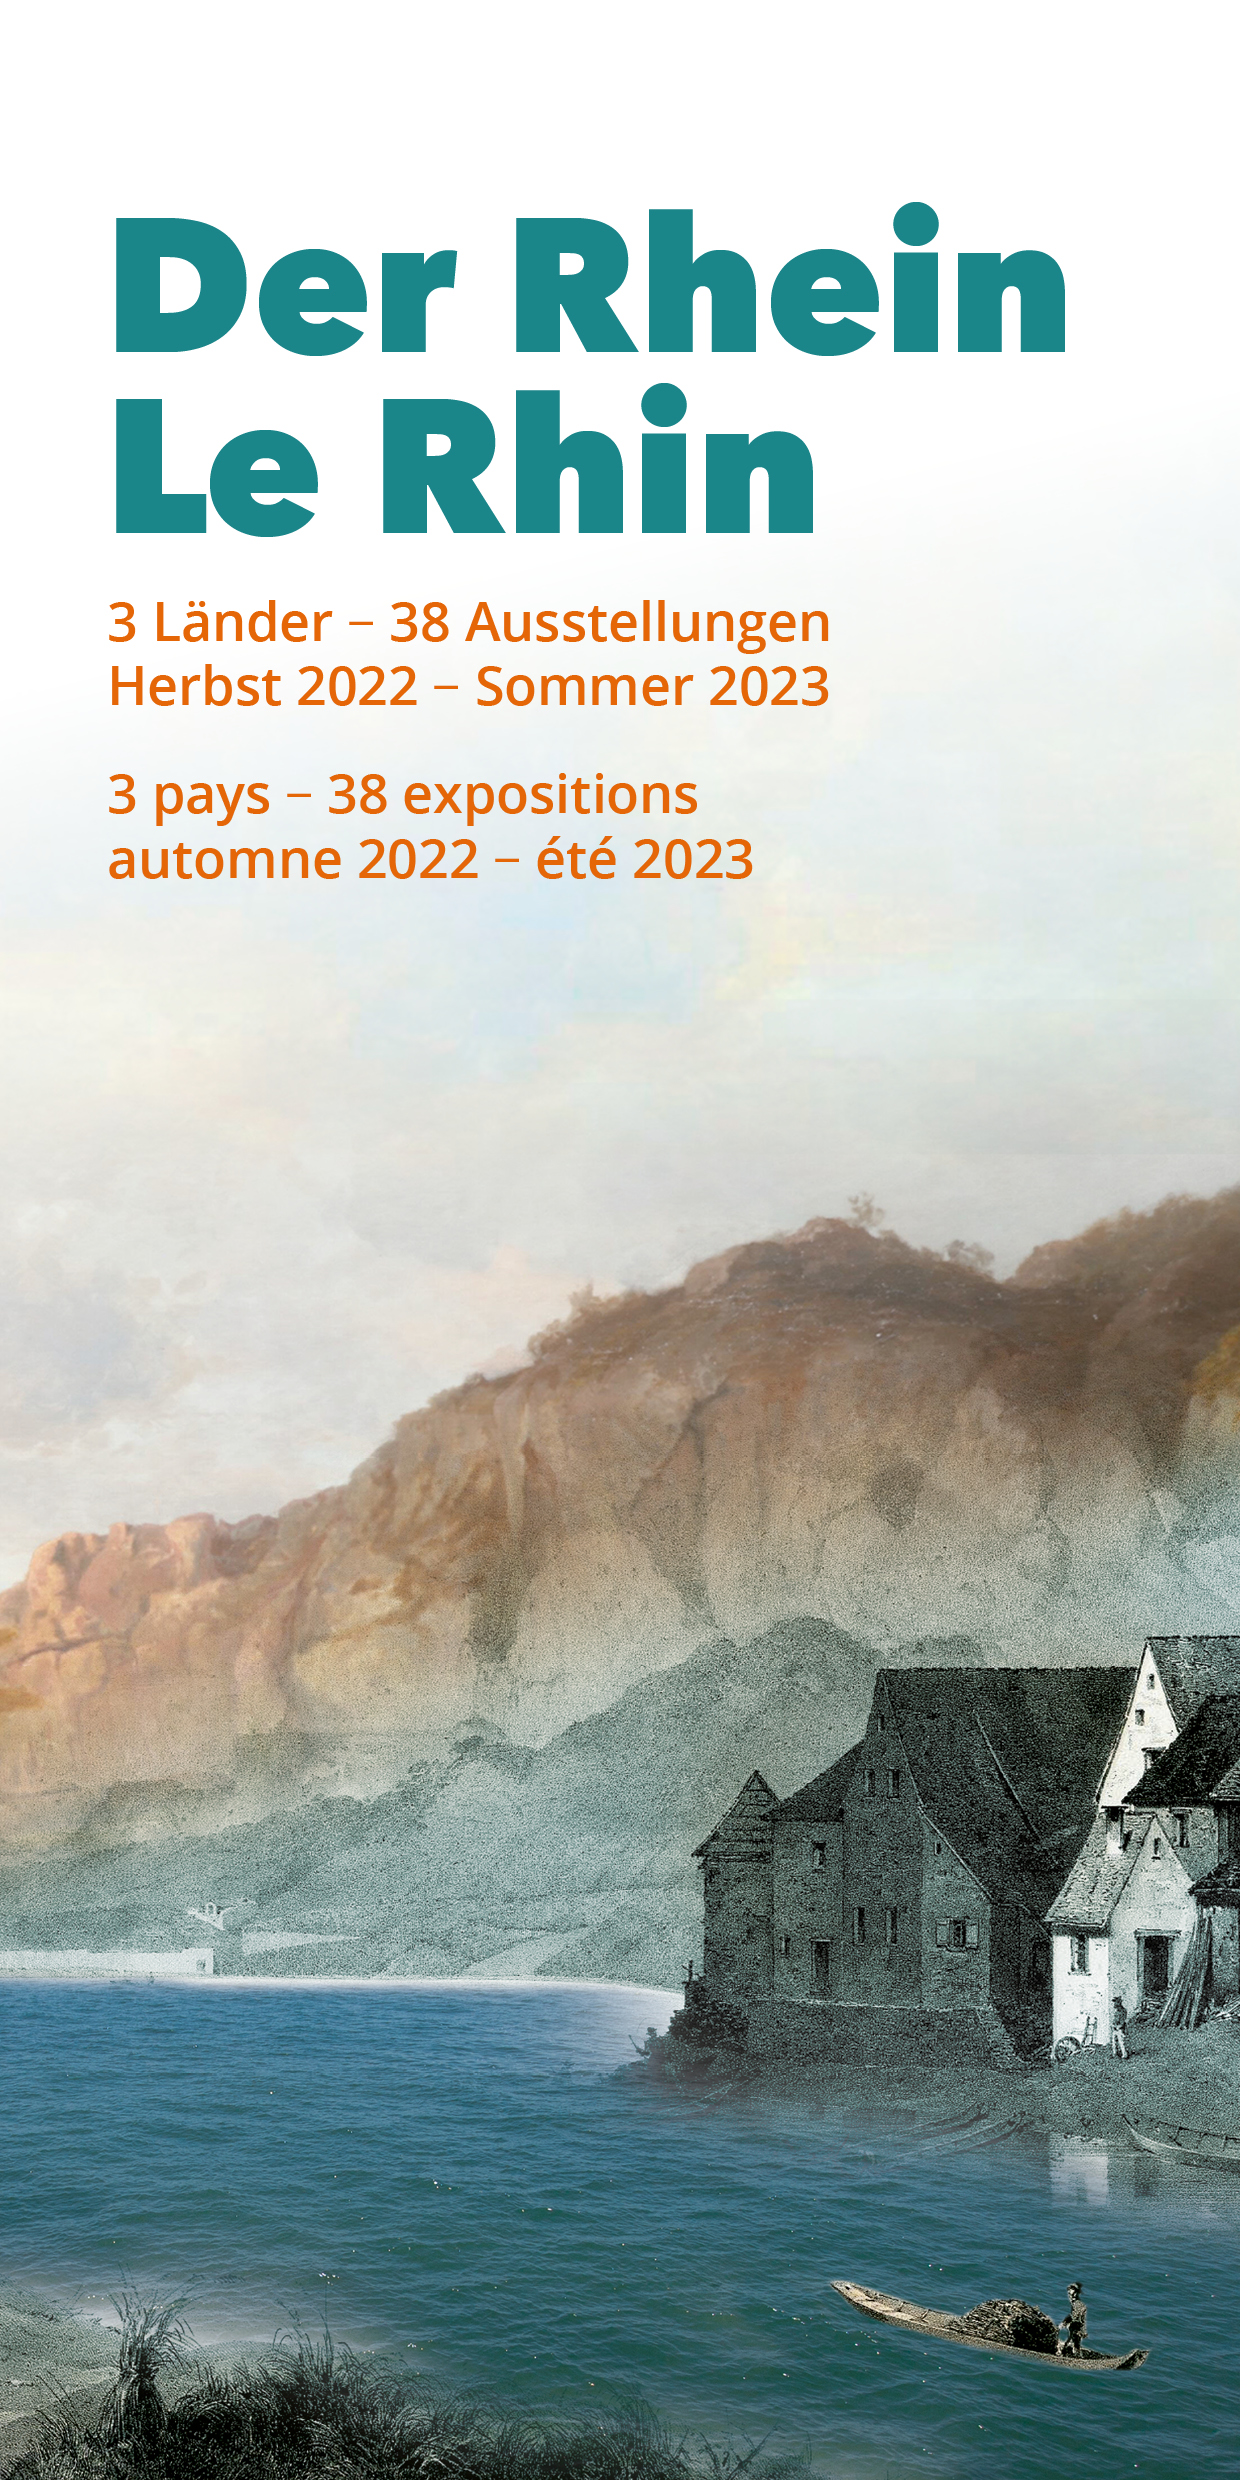 38 expositions sur le thème du Rhin – automne 2022 – été 2023